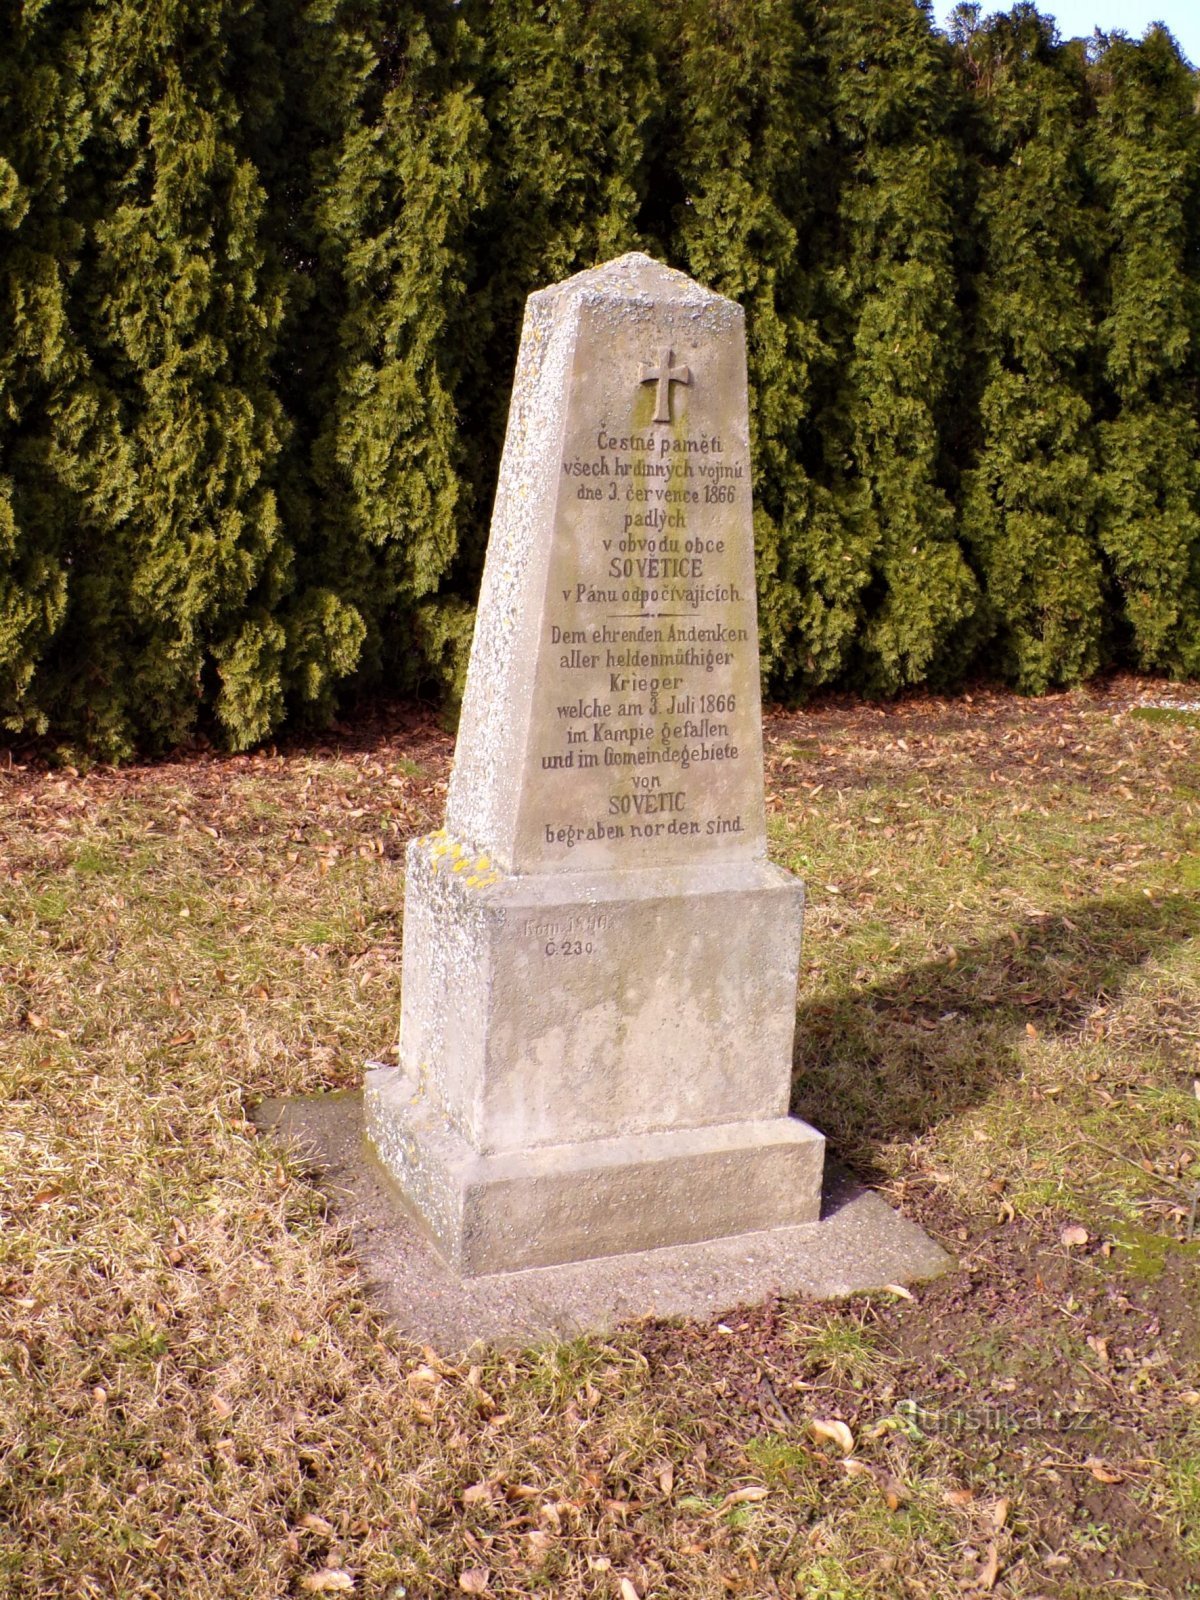 Pomník padlým v prusko-rakouské válce roku 1866 (Sovětice, 24.2.2021)